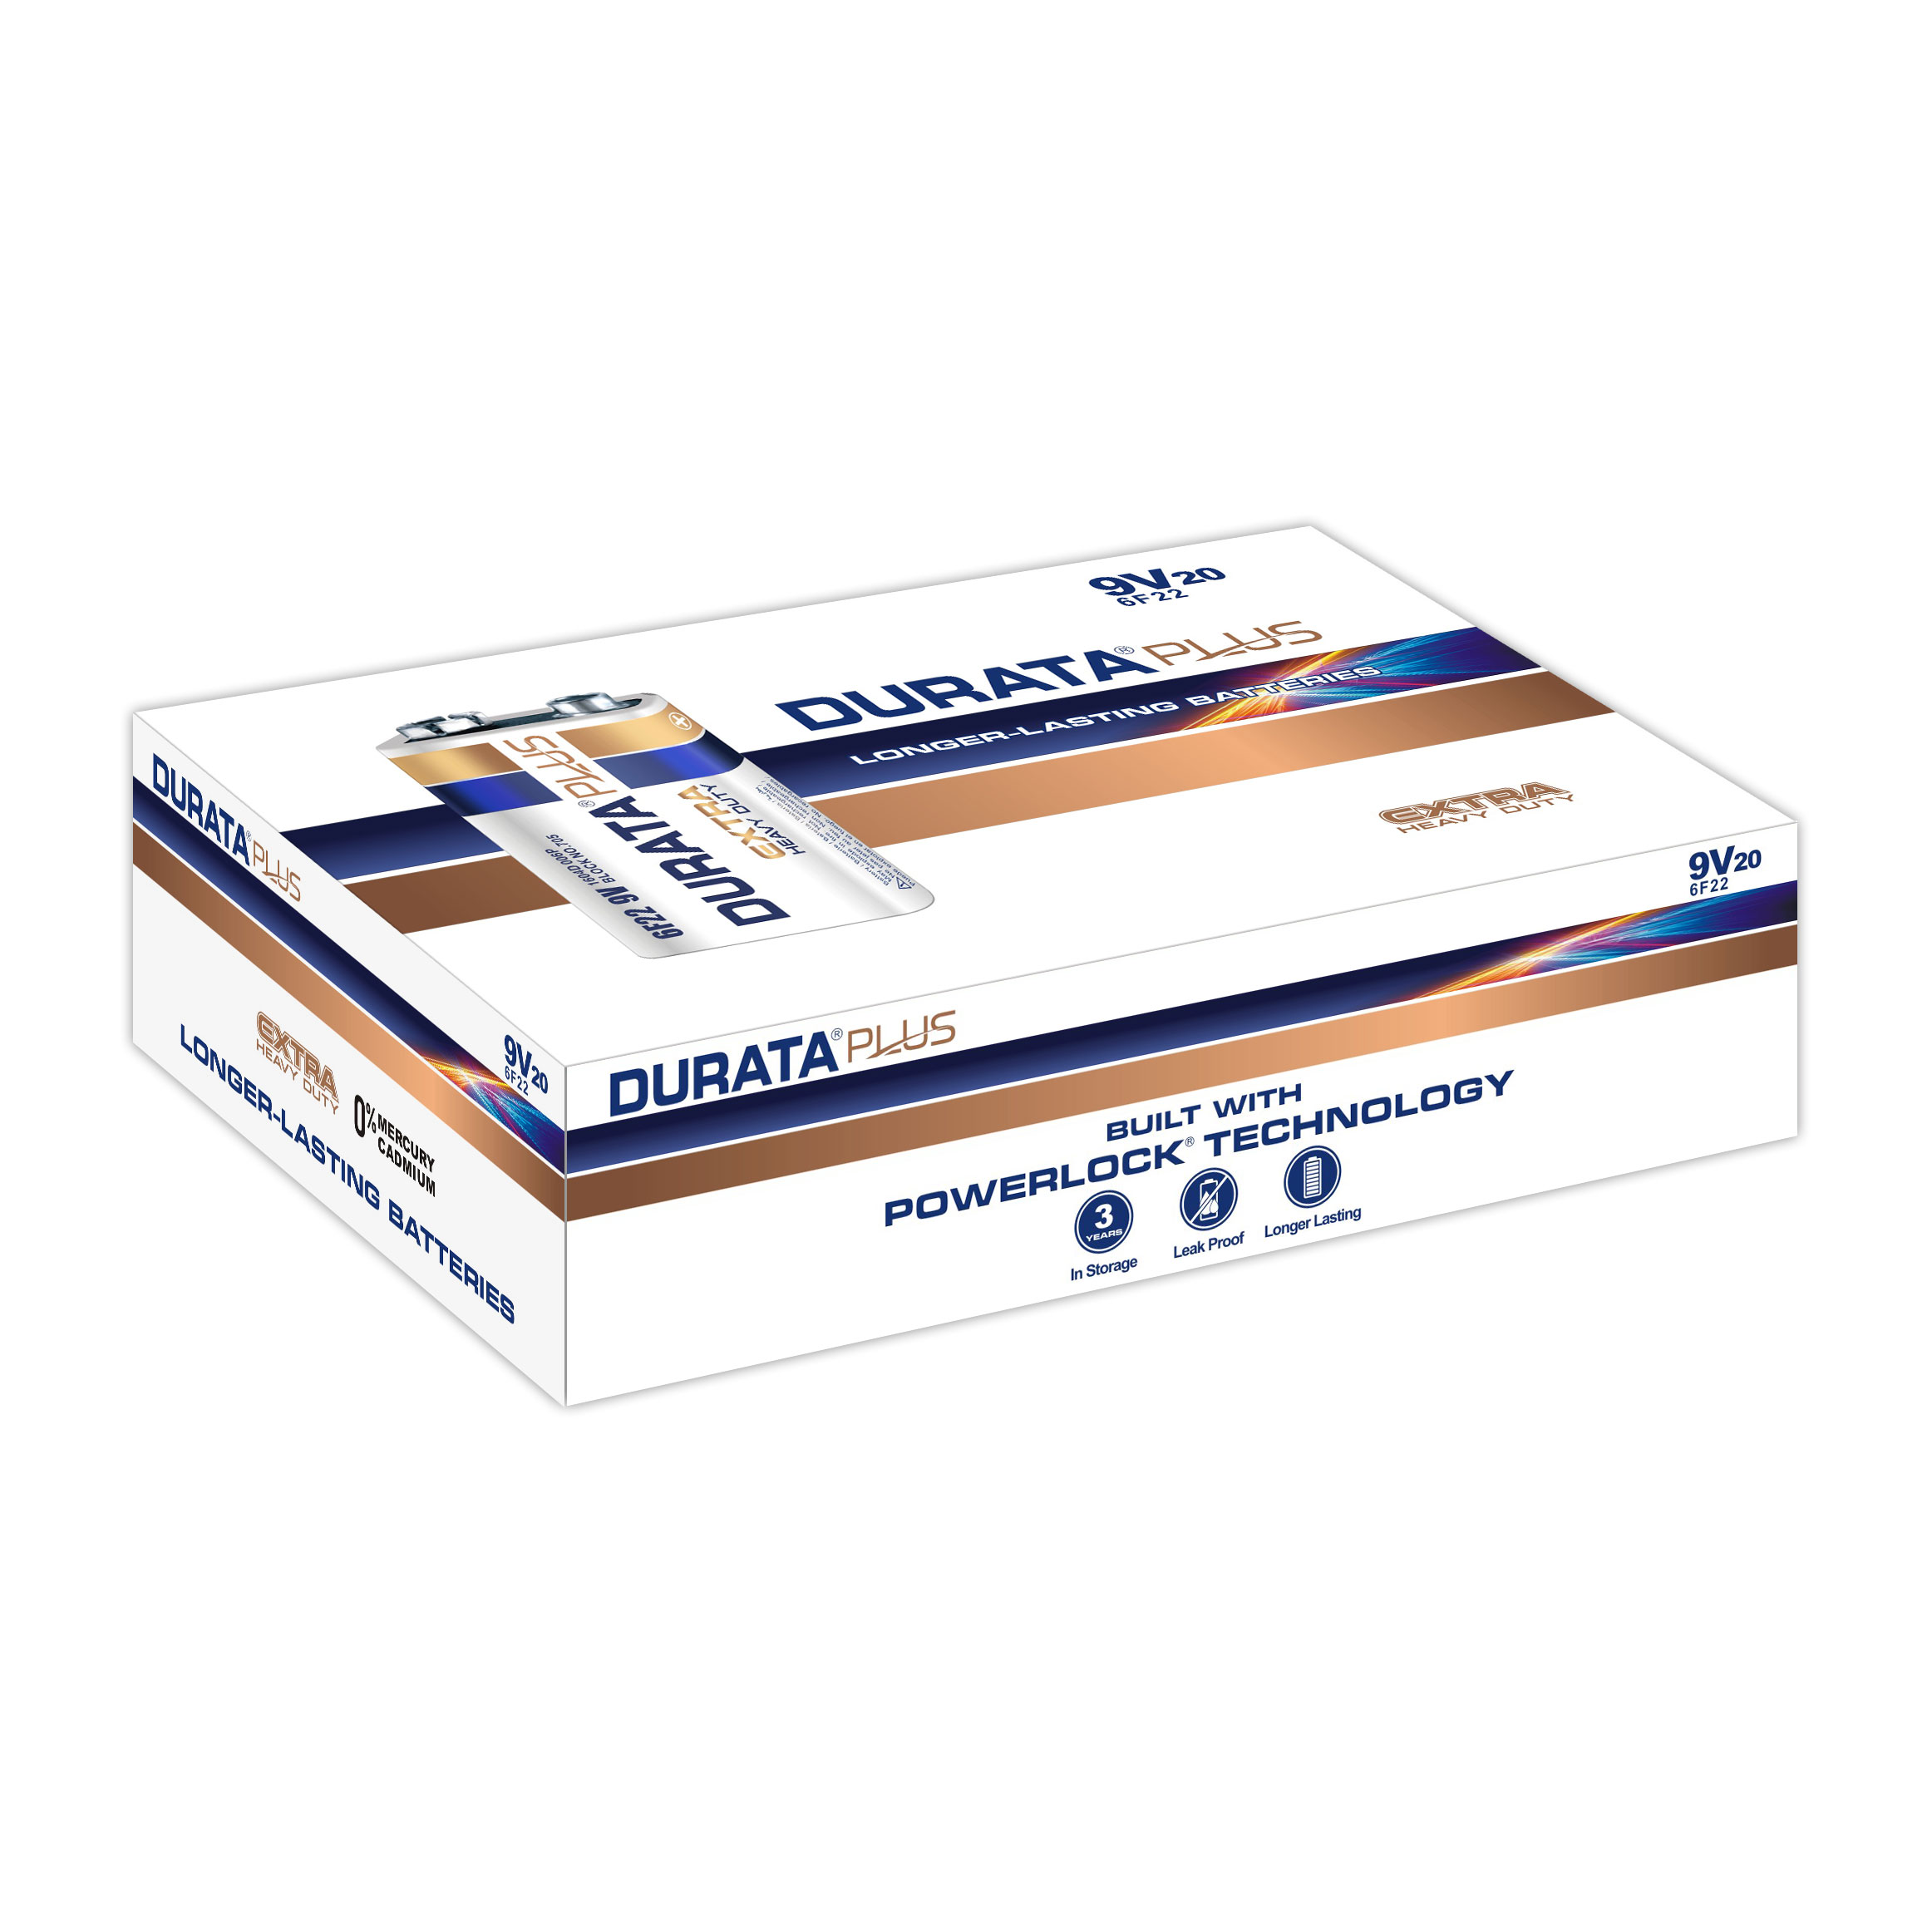 DURATA PLUS 9V - Shrink Pack 1 Battery - box